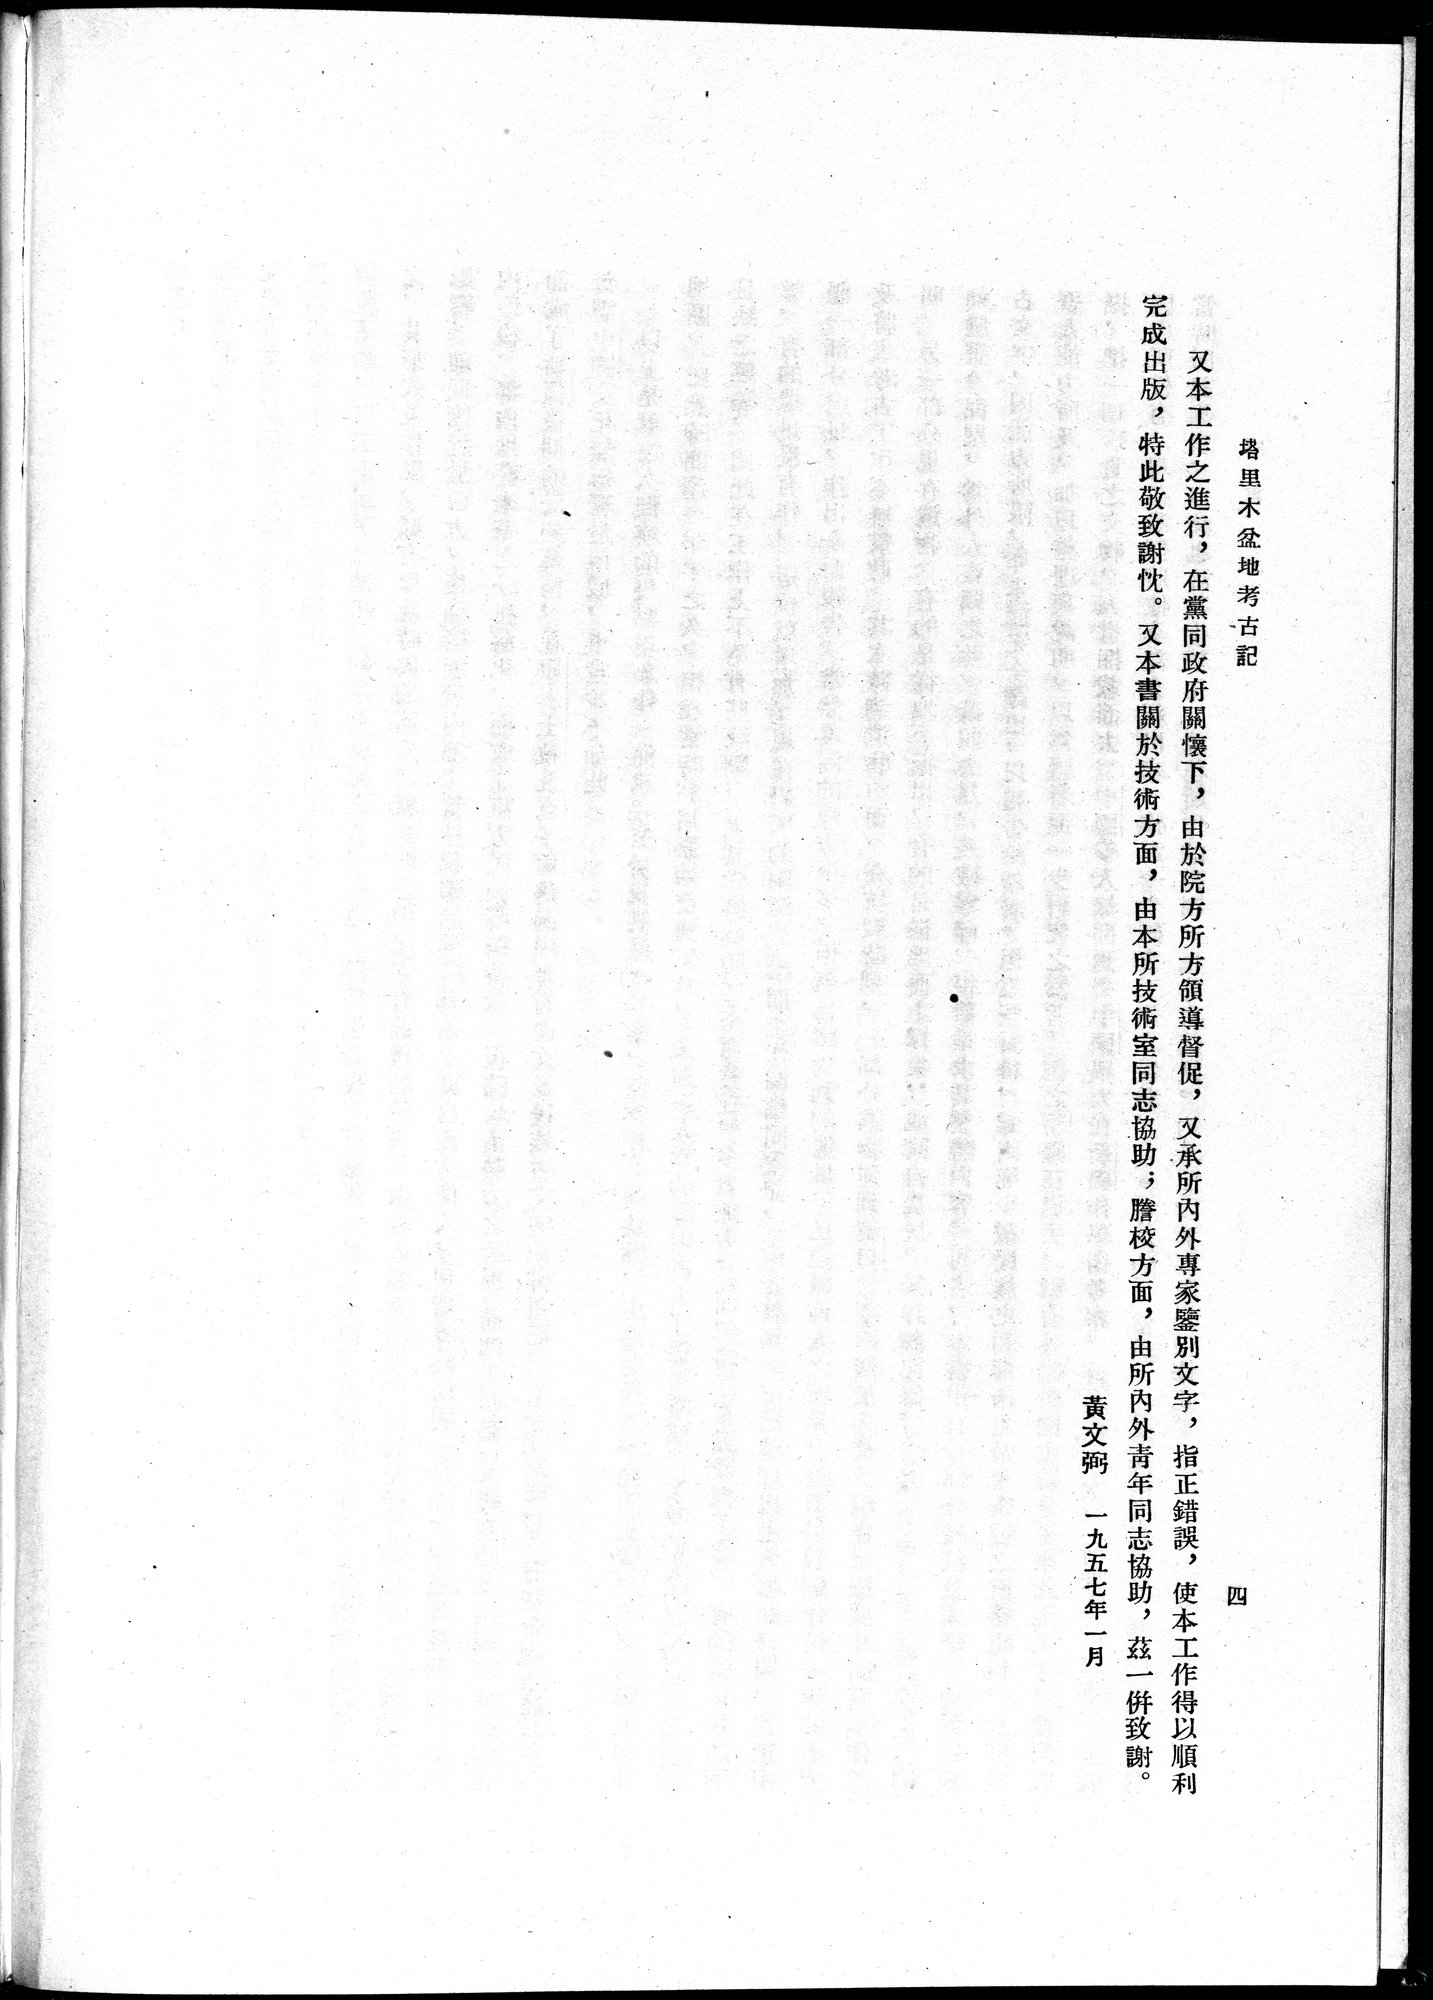 塔里木盆地考古記 : vol.1 / Page 10 (Grayscale High Resolution Image)